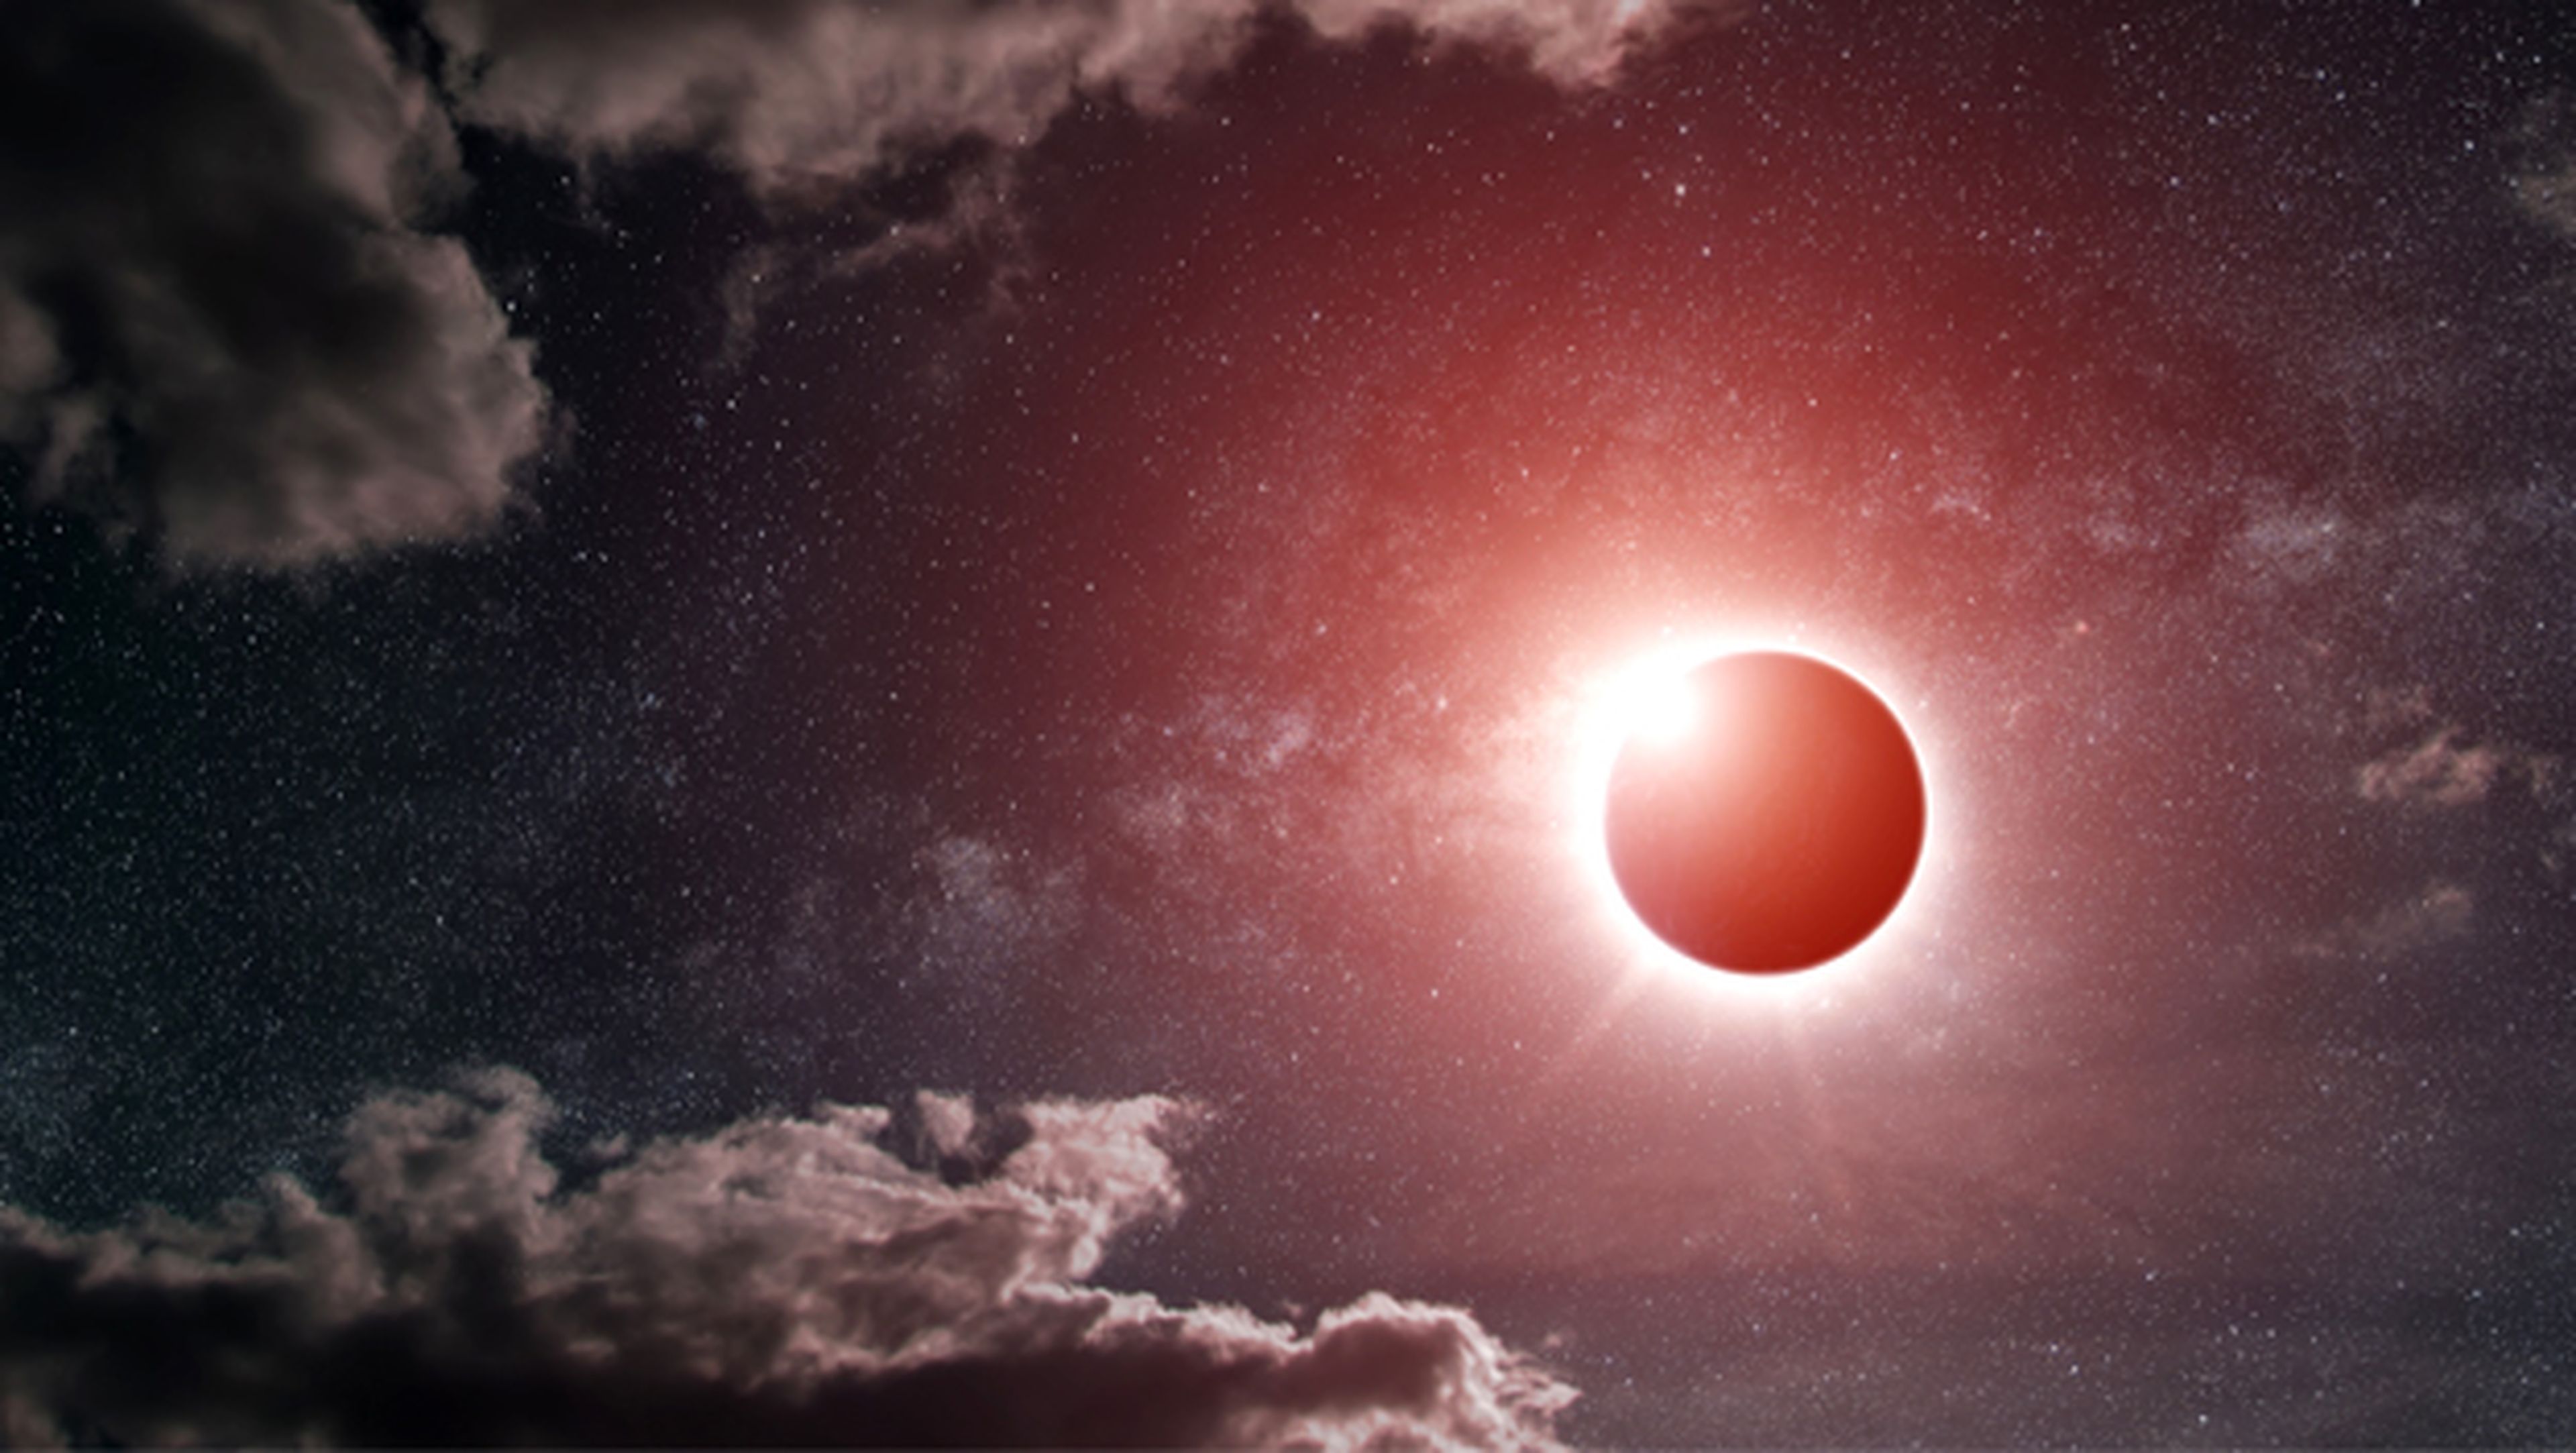 ¡Cuidado!, un selfie con el eclipse puede causar ceguera